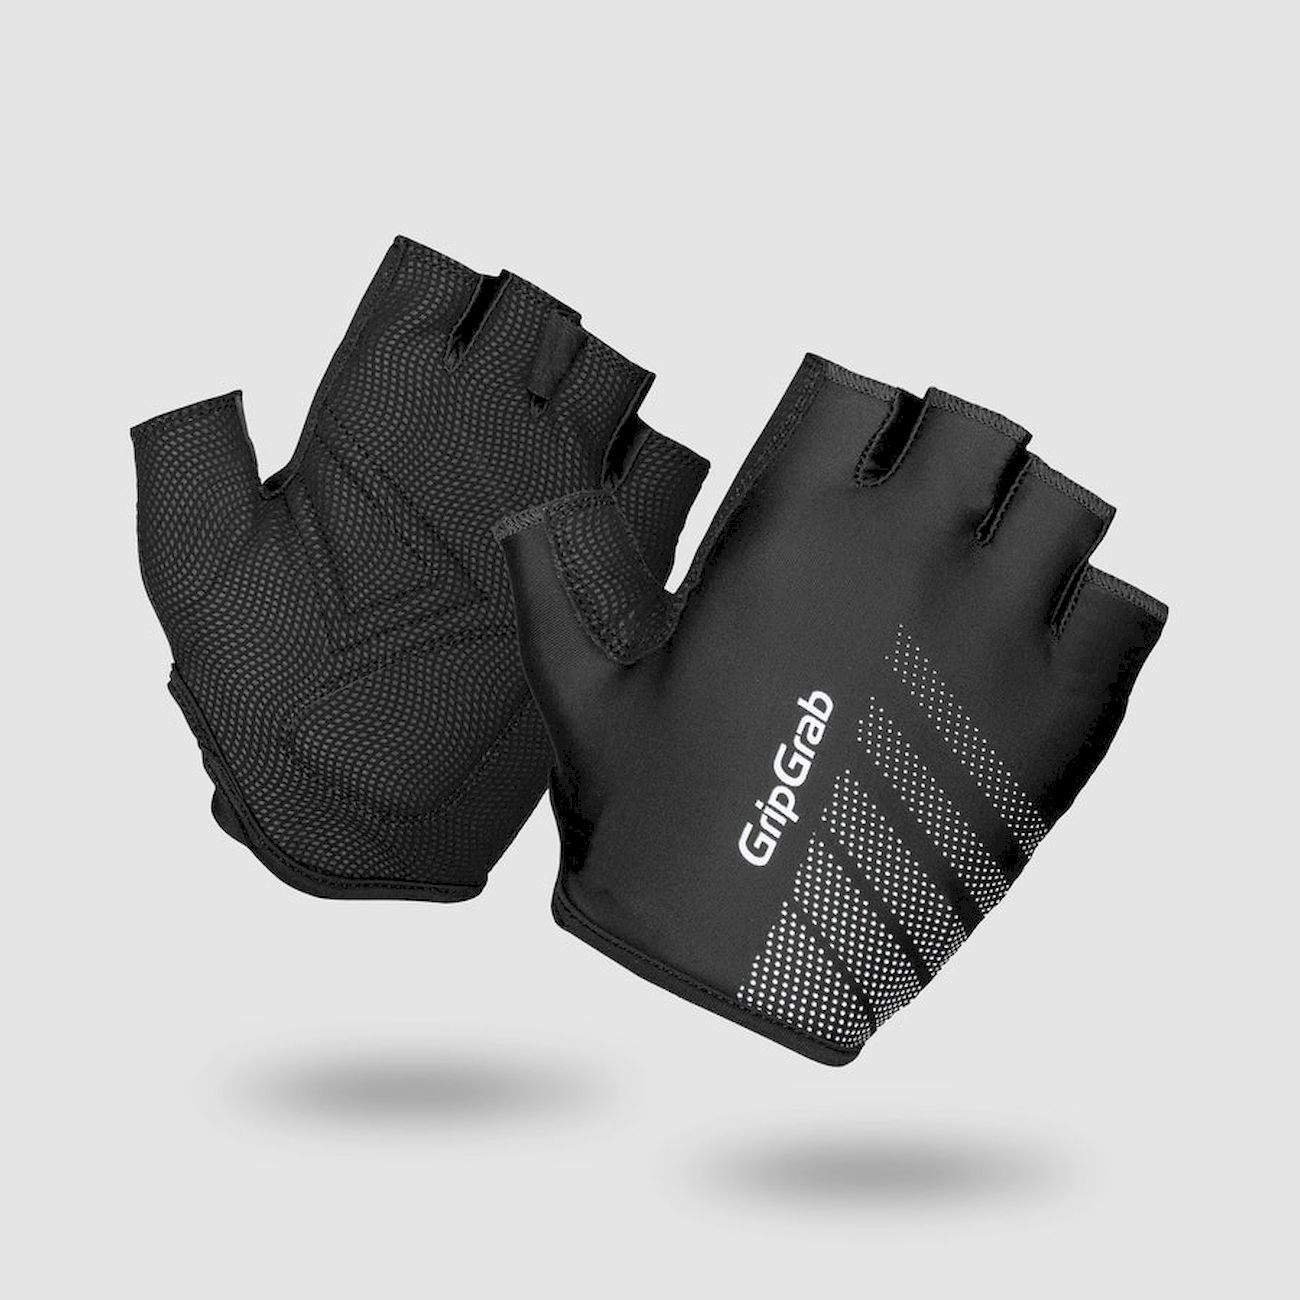 Grip Grab Ride Lightweight Padded Gloves - Short finger gloves - Men's